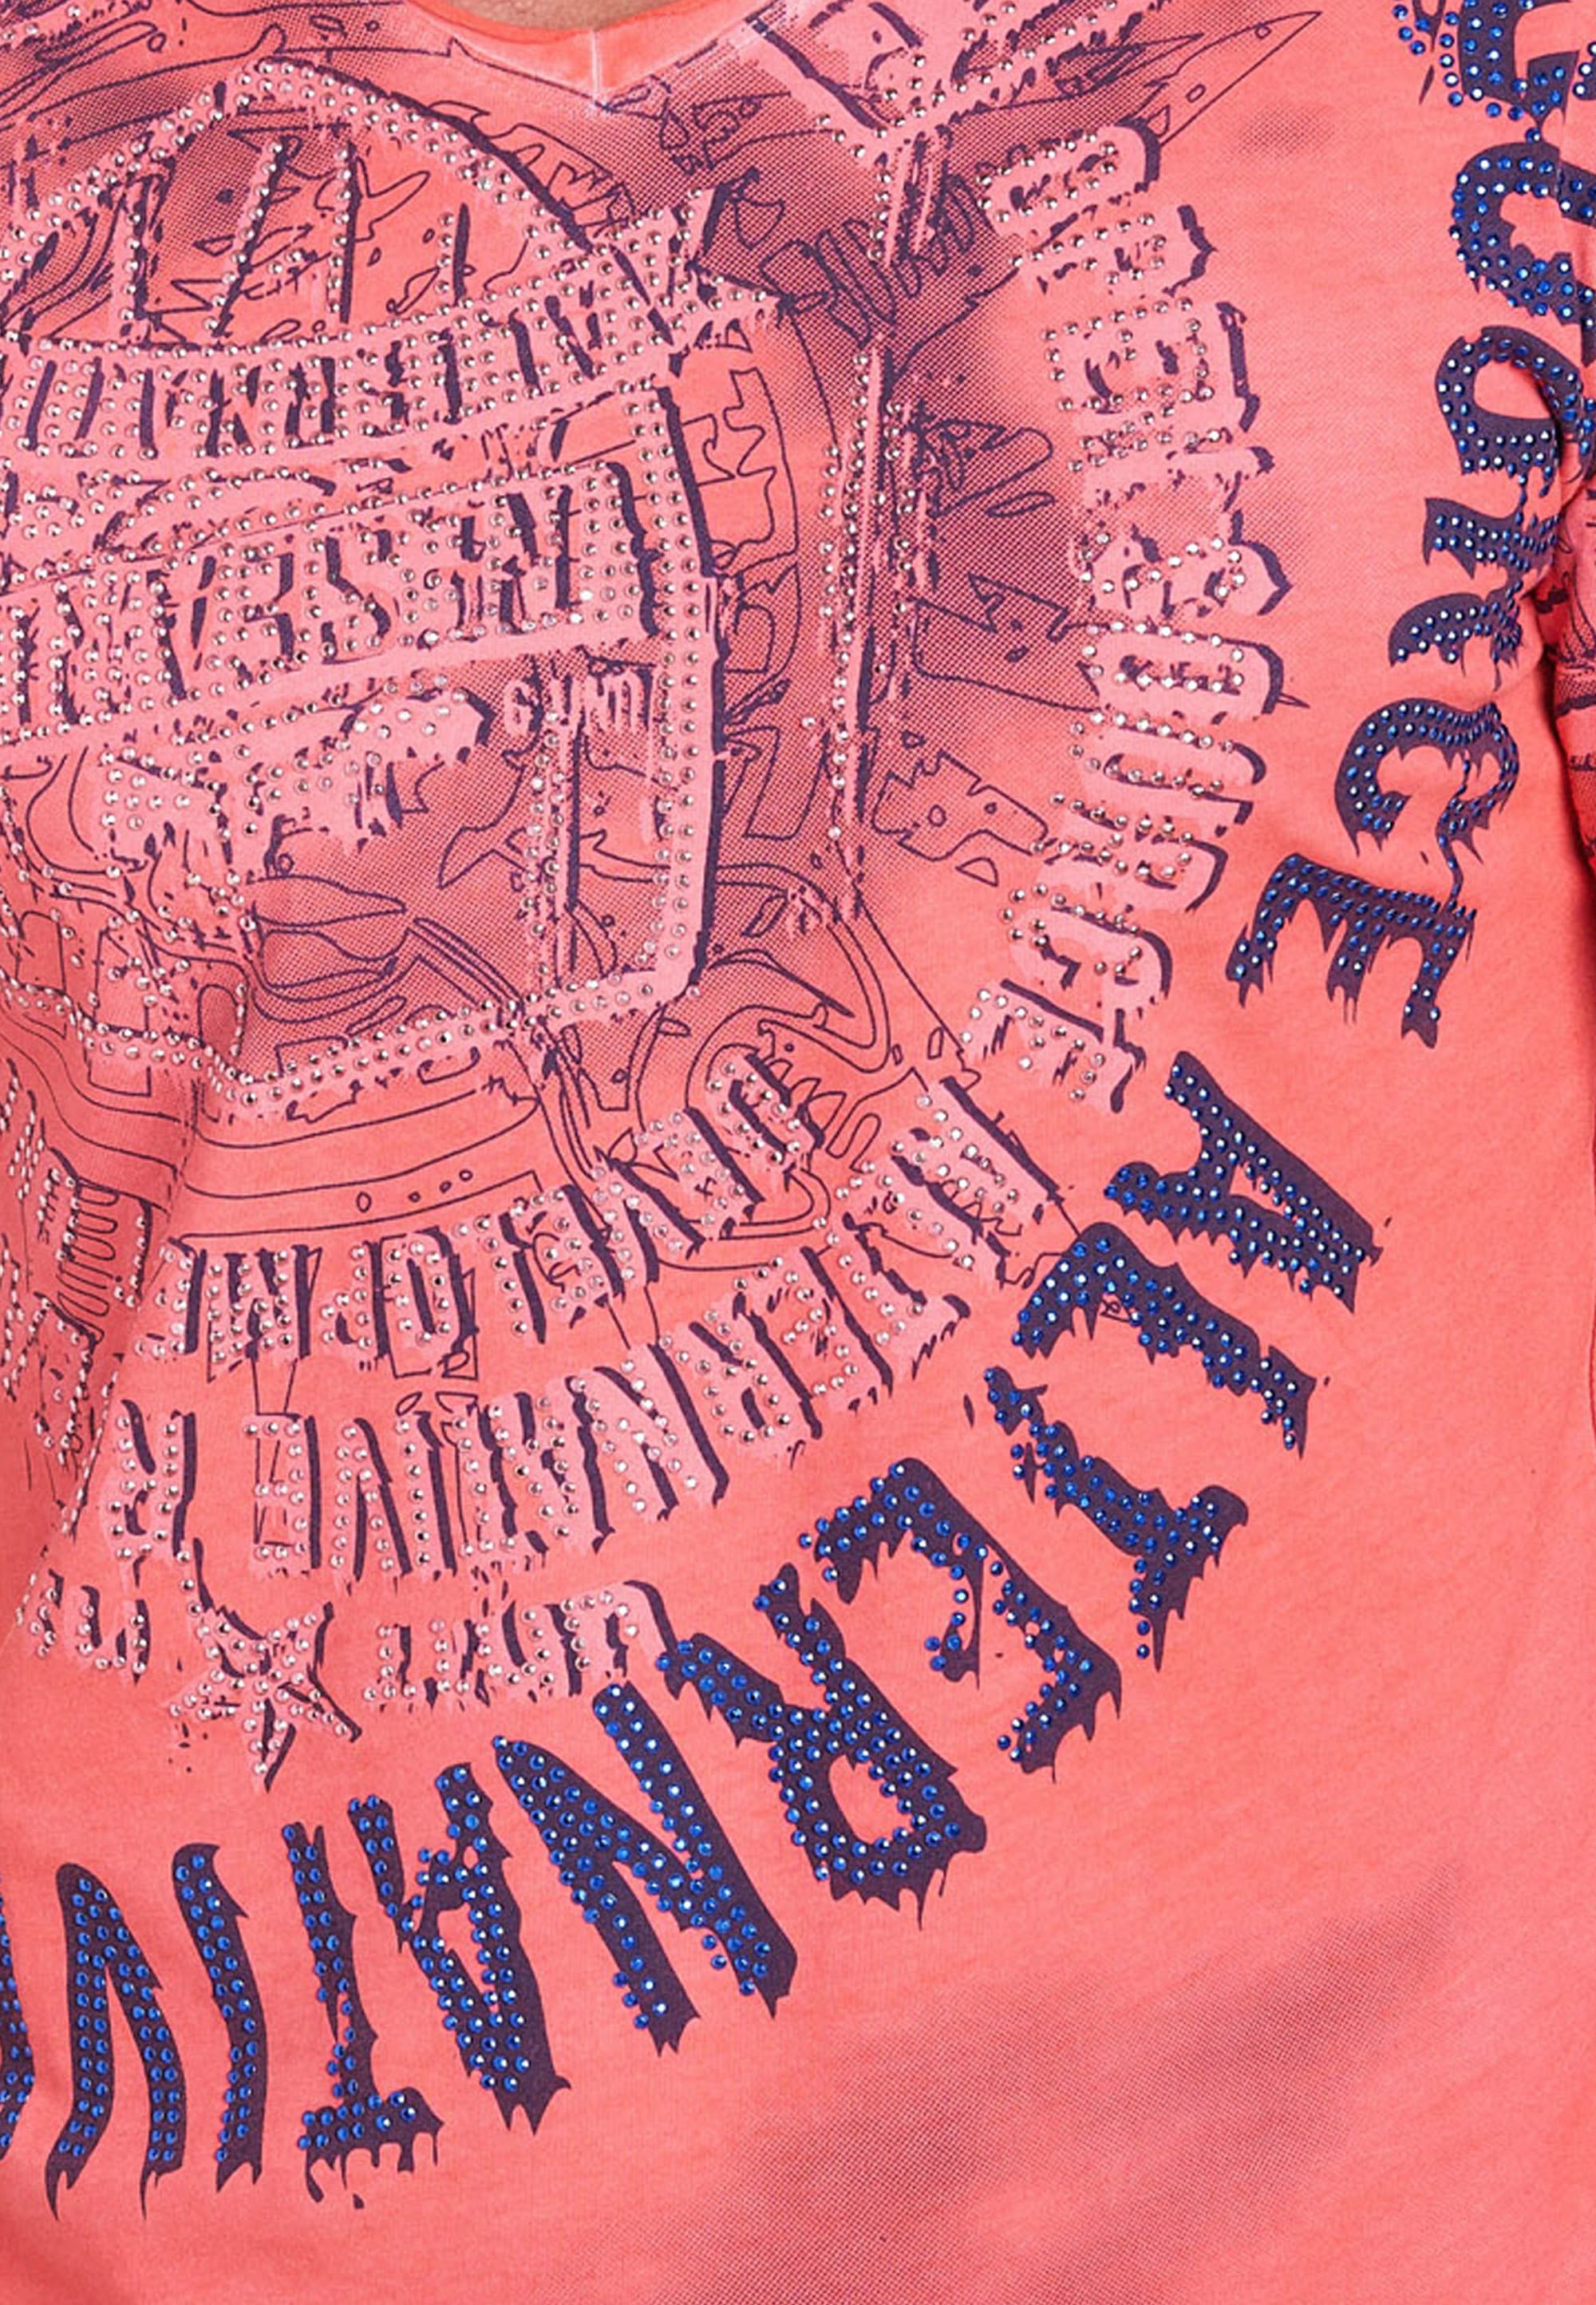 Rusty Neal T-Shirt, mit Strasssteinen und Frontprint